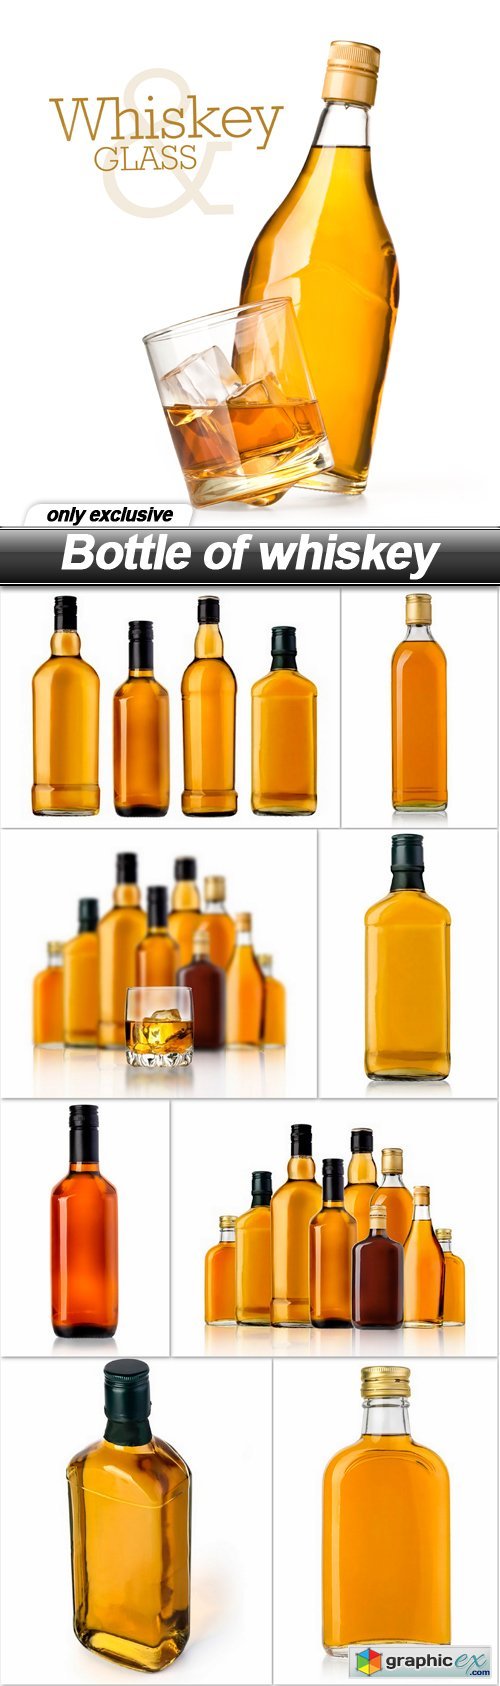 Bottle of whiskey - 9 UHQ JPEG